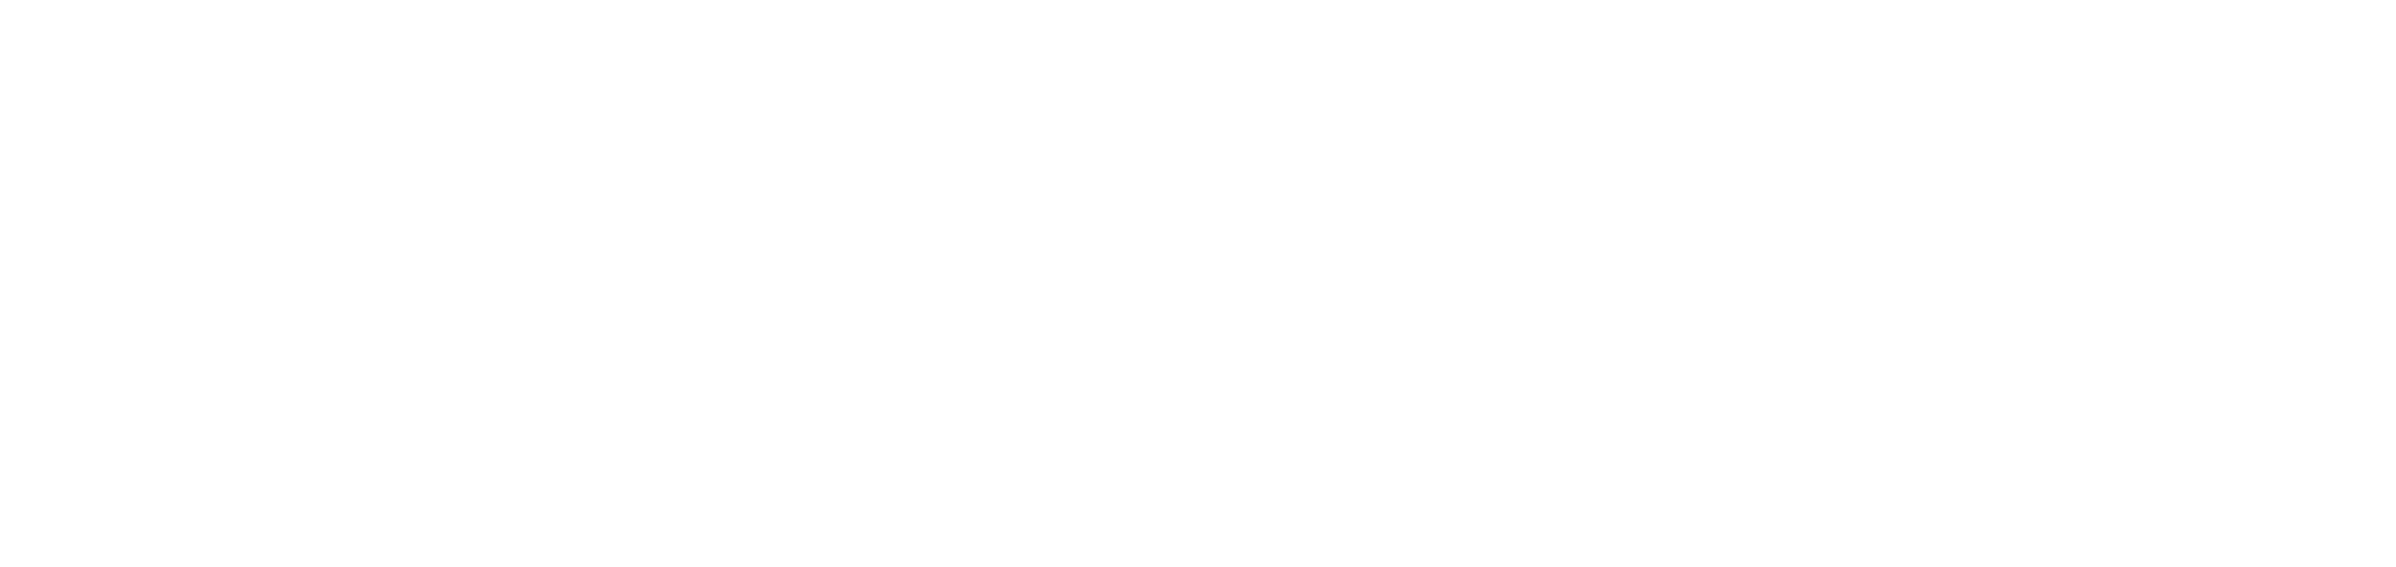 SkyLockr Logo